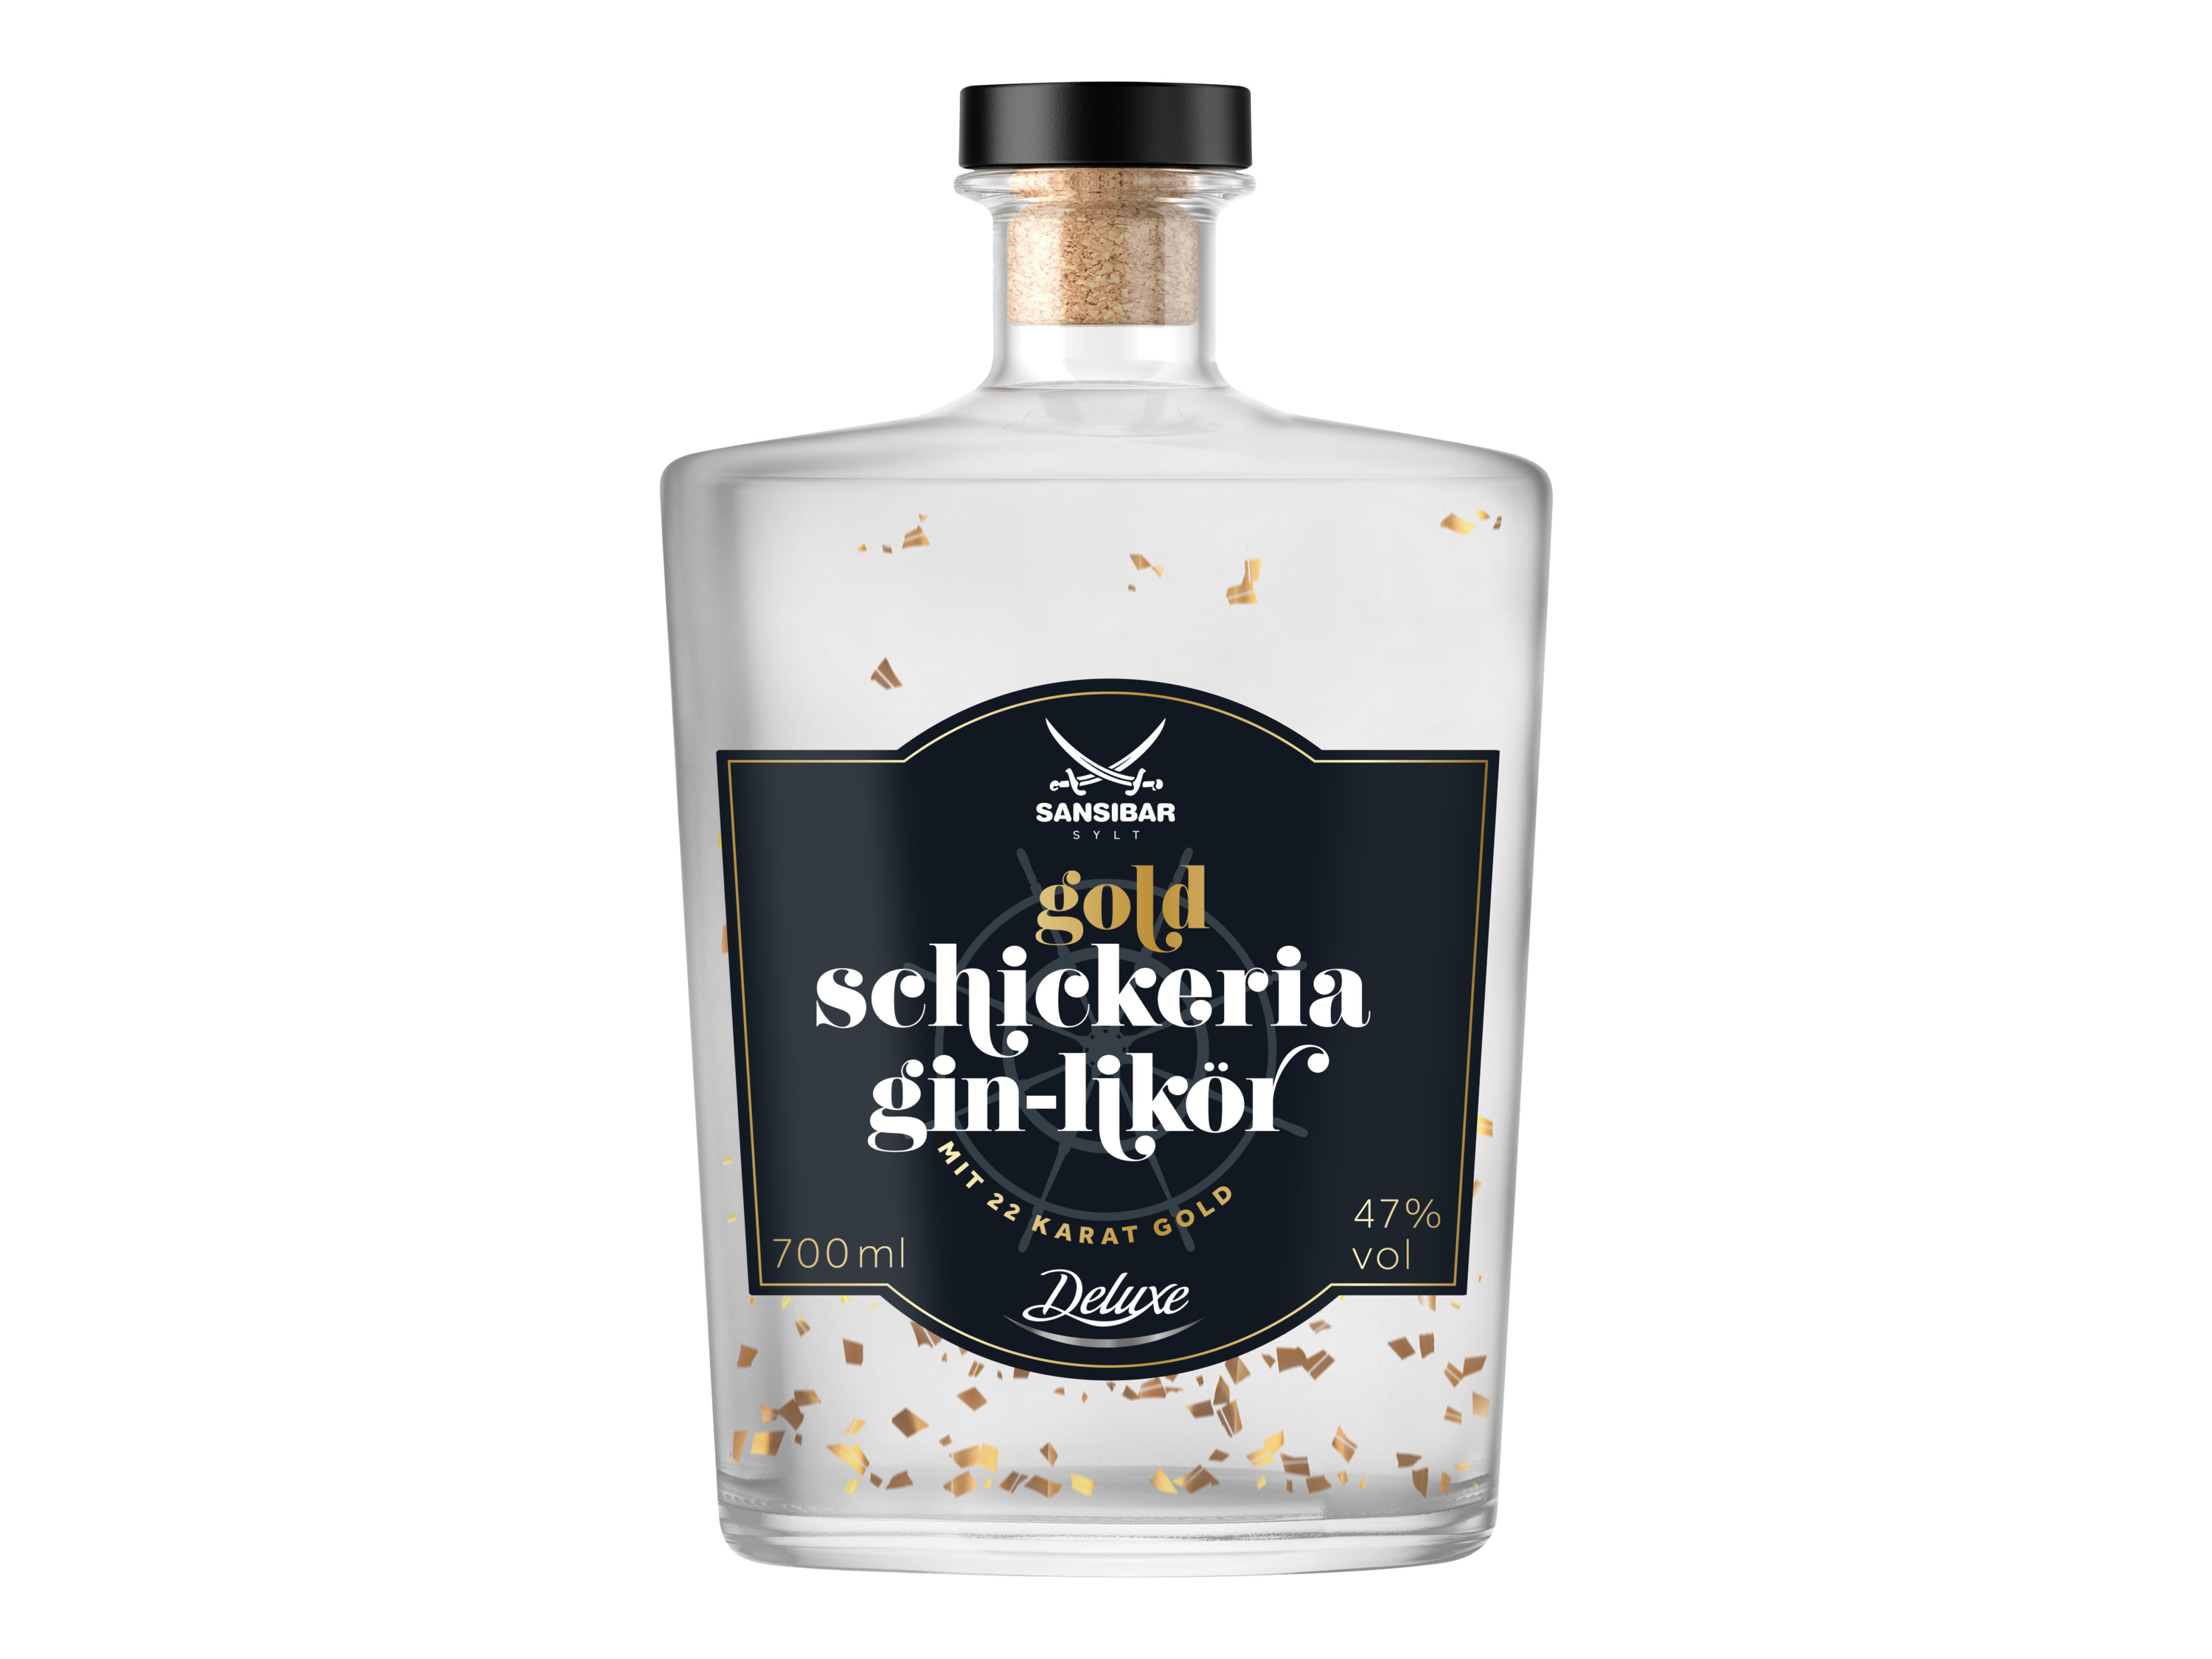 SANSIBAR Schickeria Gin-Likör mit Gold 47% Vol